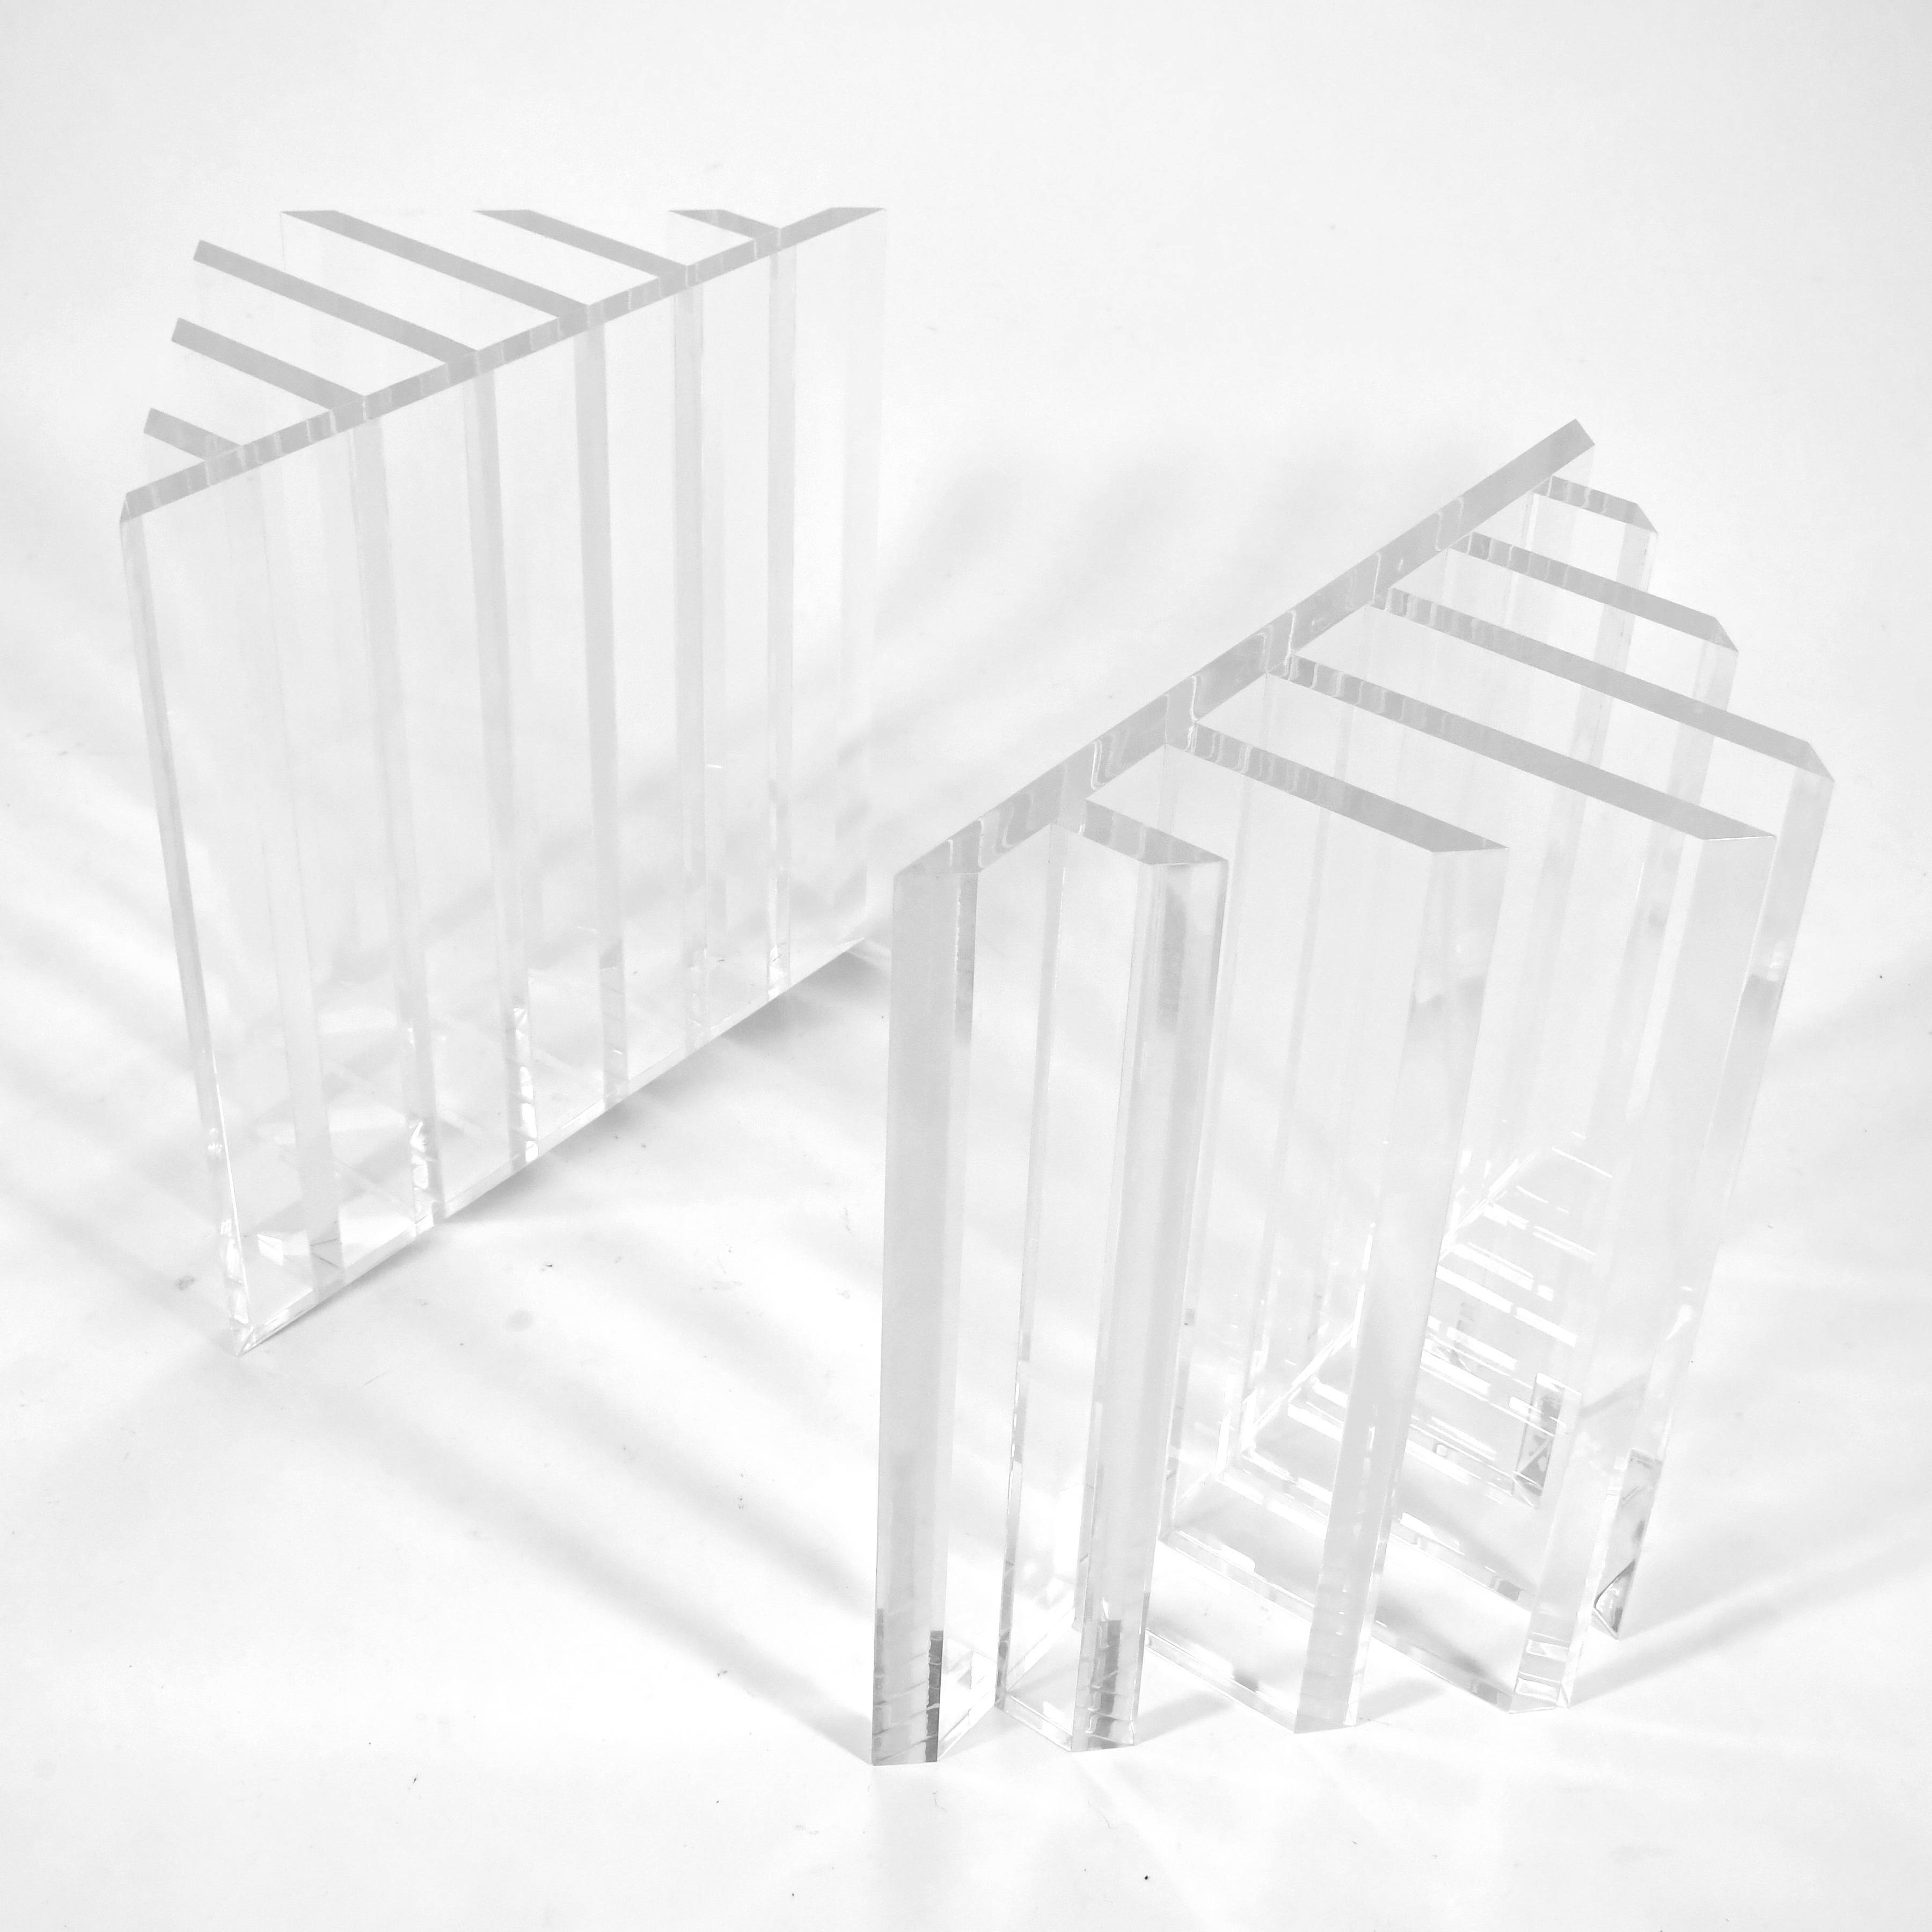 Dieses Paar dynamischer John Mascheroni-Tischsockel hat ein komplexes geometrisches Design, das in dickem Lucite ausgeführt ist. Die beiden Untergestelle können in verschiedenen Konfigurationen angeordnet werden und sind in der Lage, eine sehr große